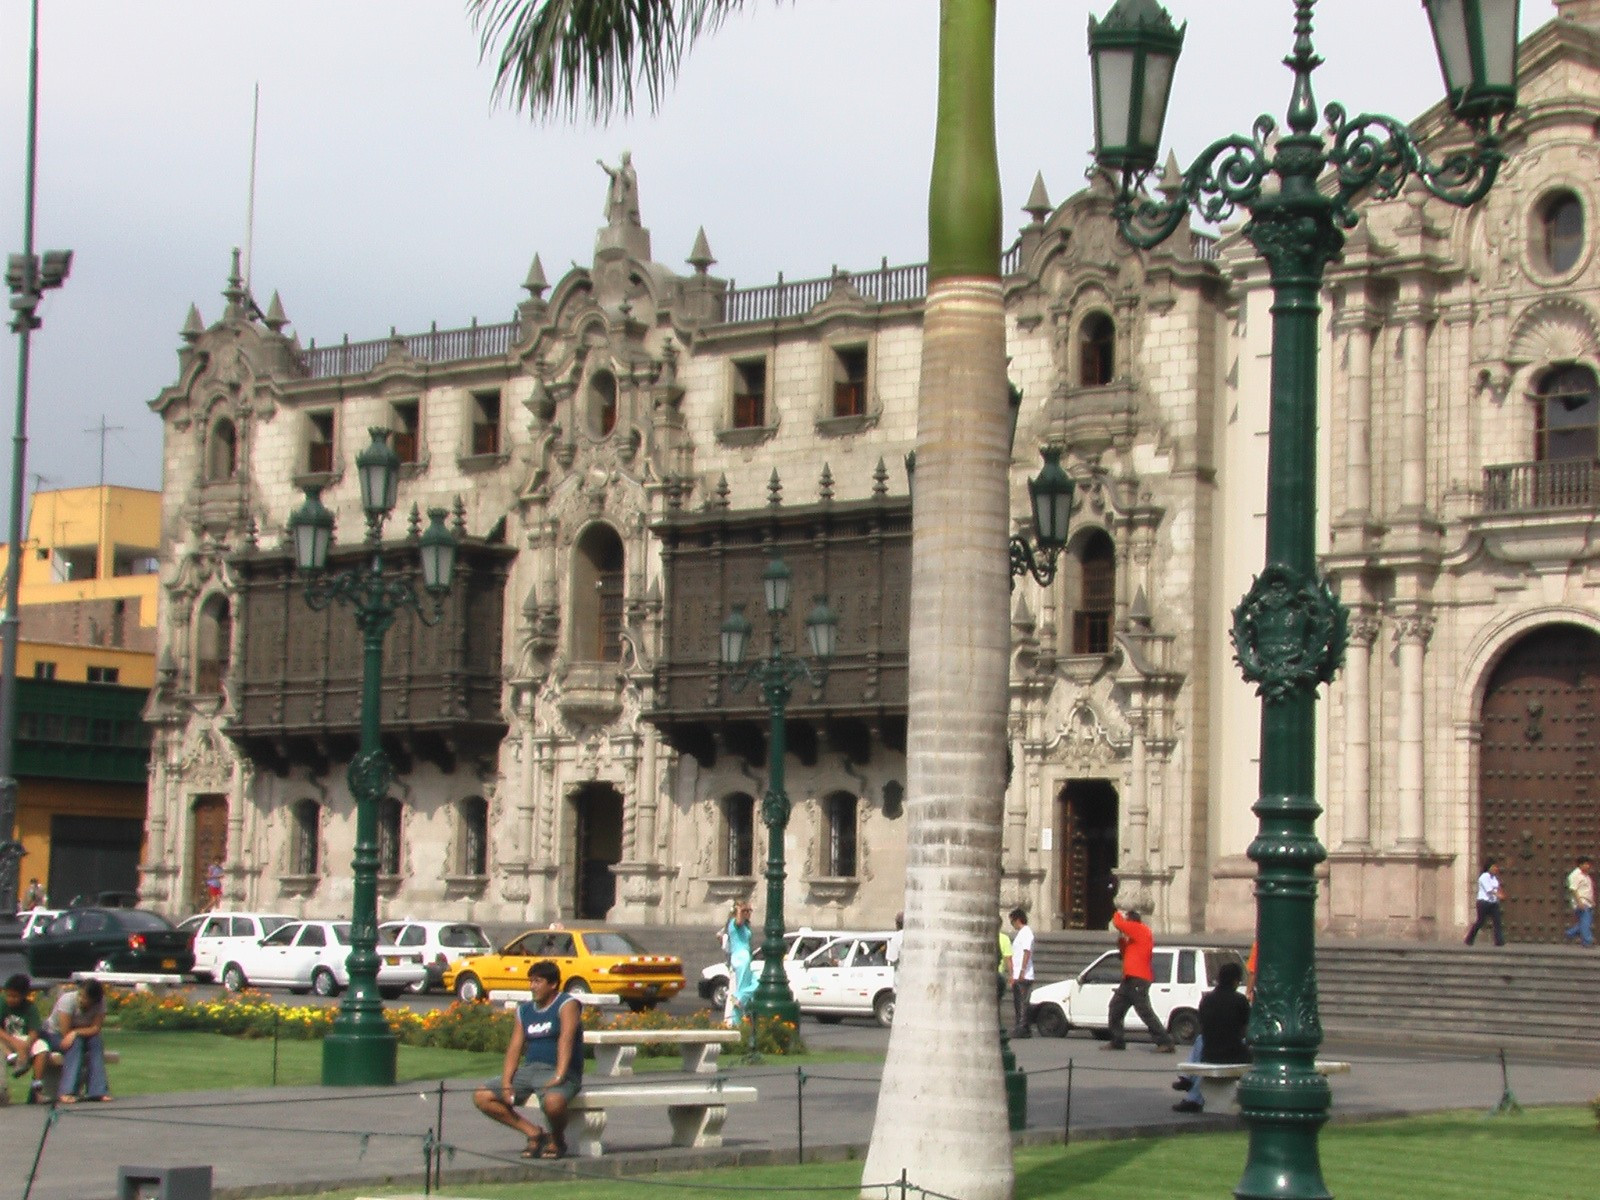 Centro historico de Lima, el palacio del obispo